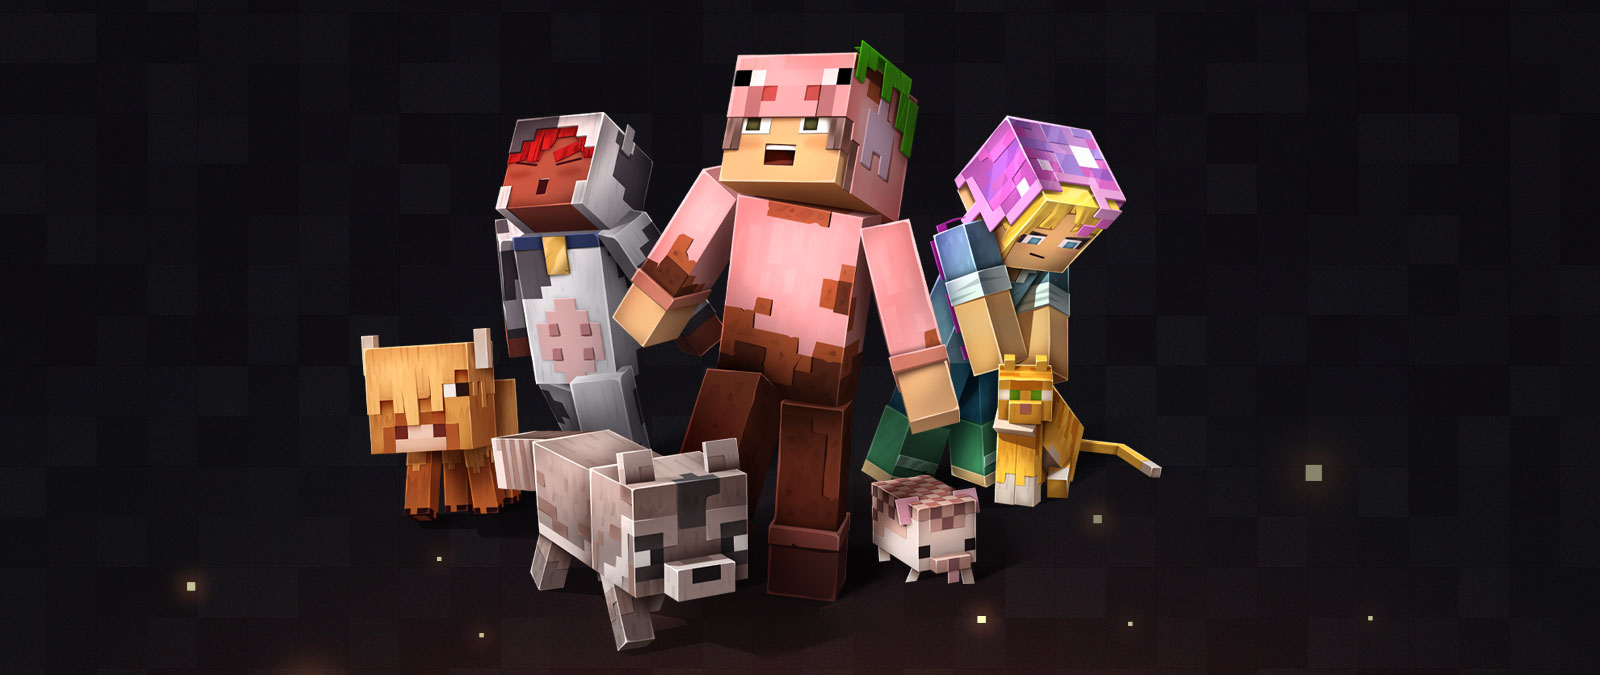 Χαρακτήρες και ζώα του Minecraft σε διαφορετικές εμφανίσεις ενώ ένας χαρακτήρας σκύβει για να χαϊδέψει μια γάτα.